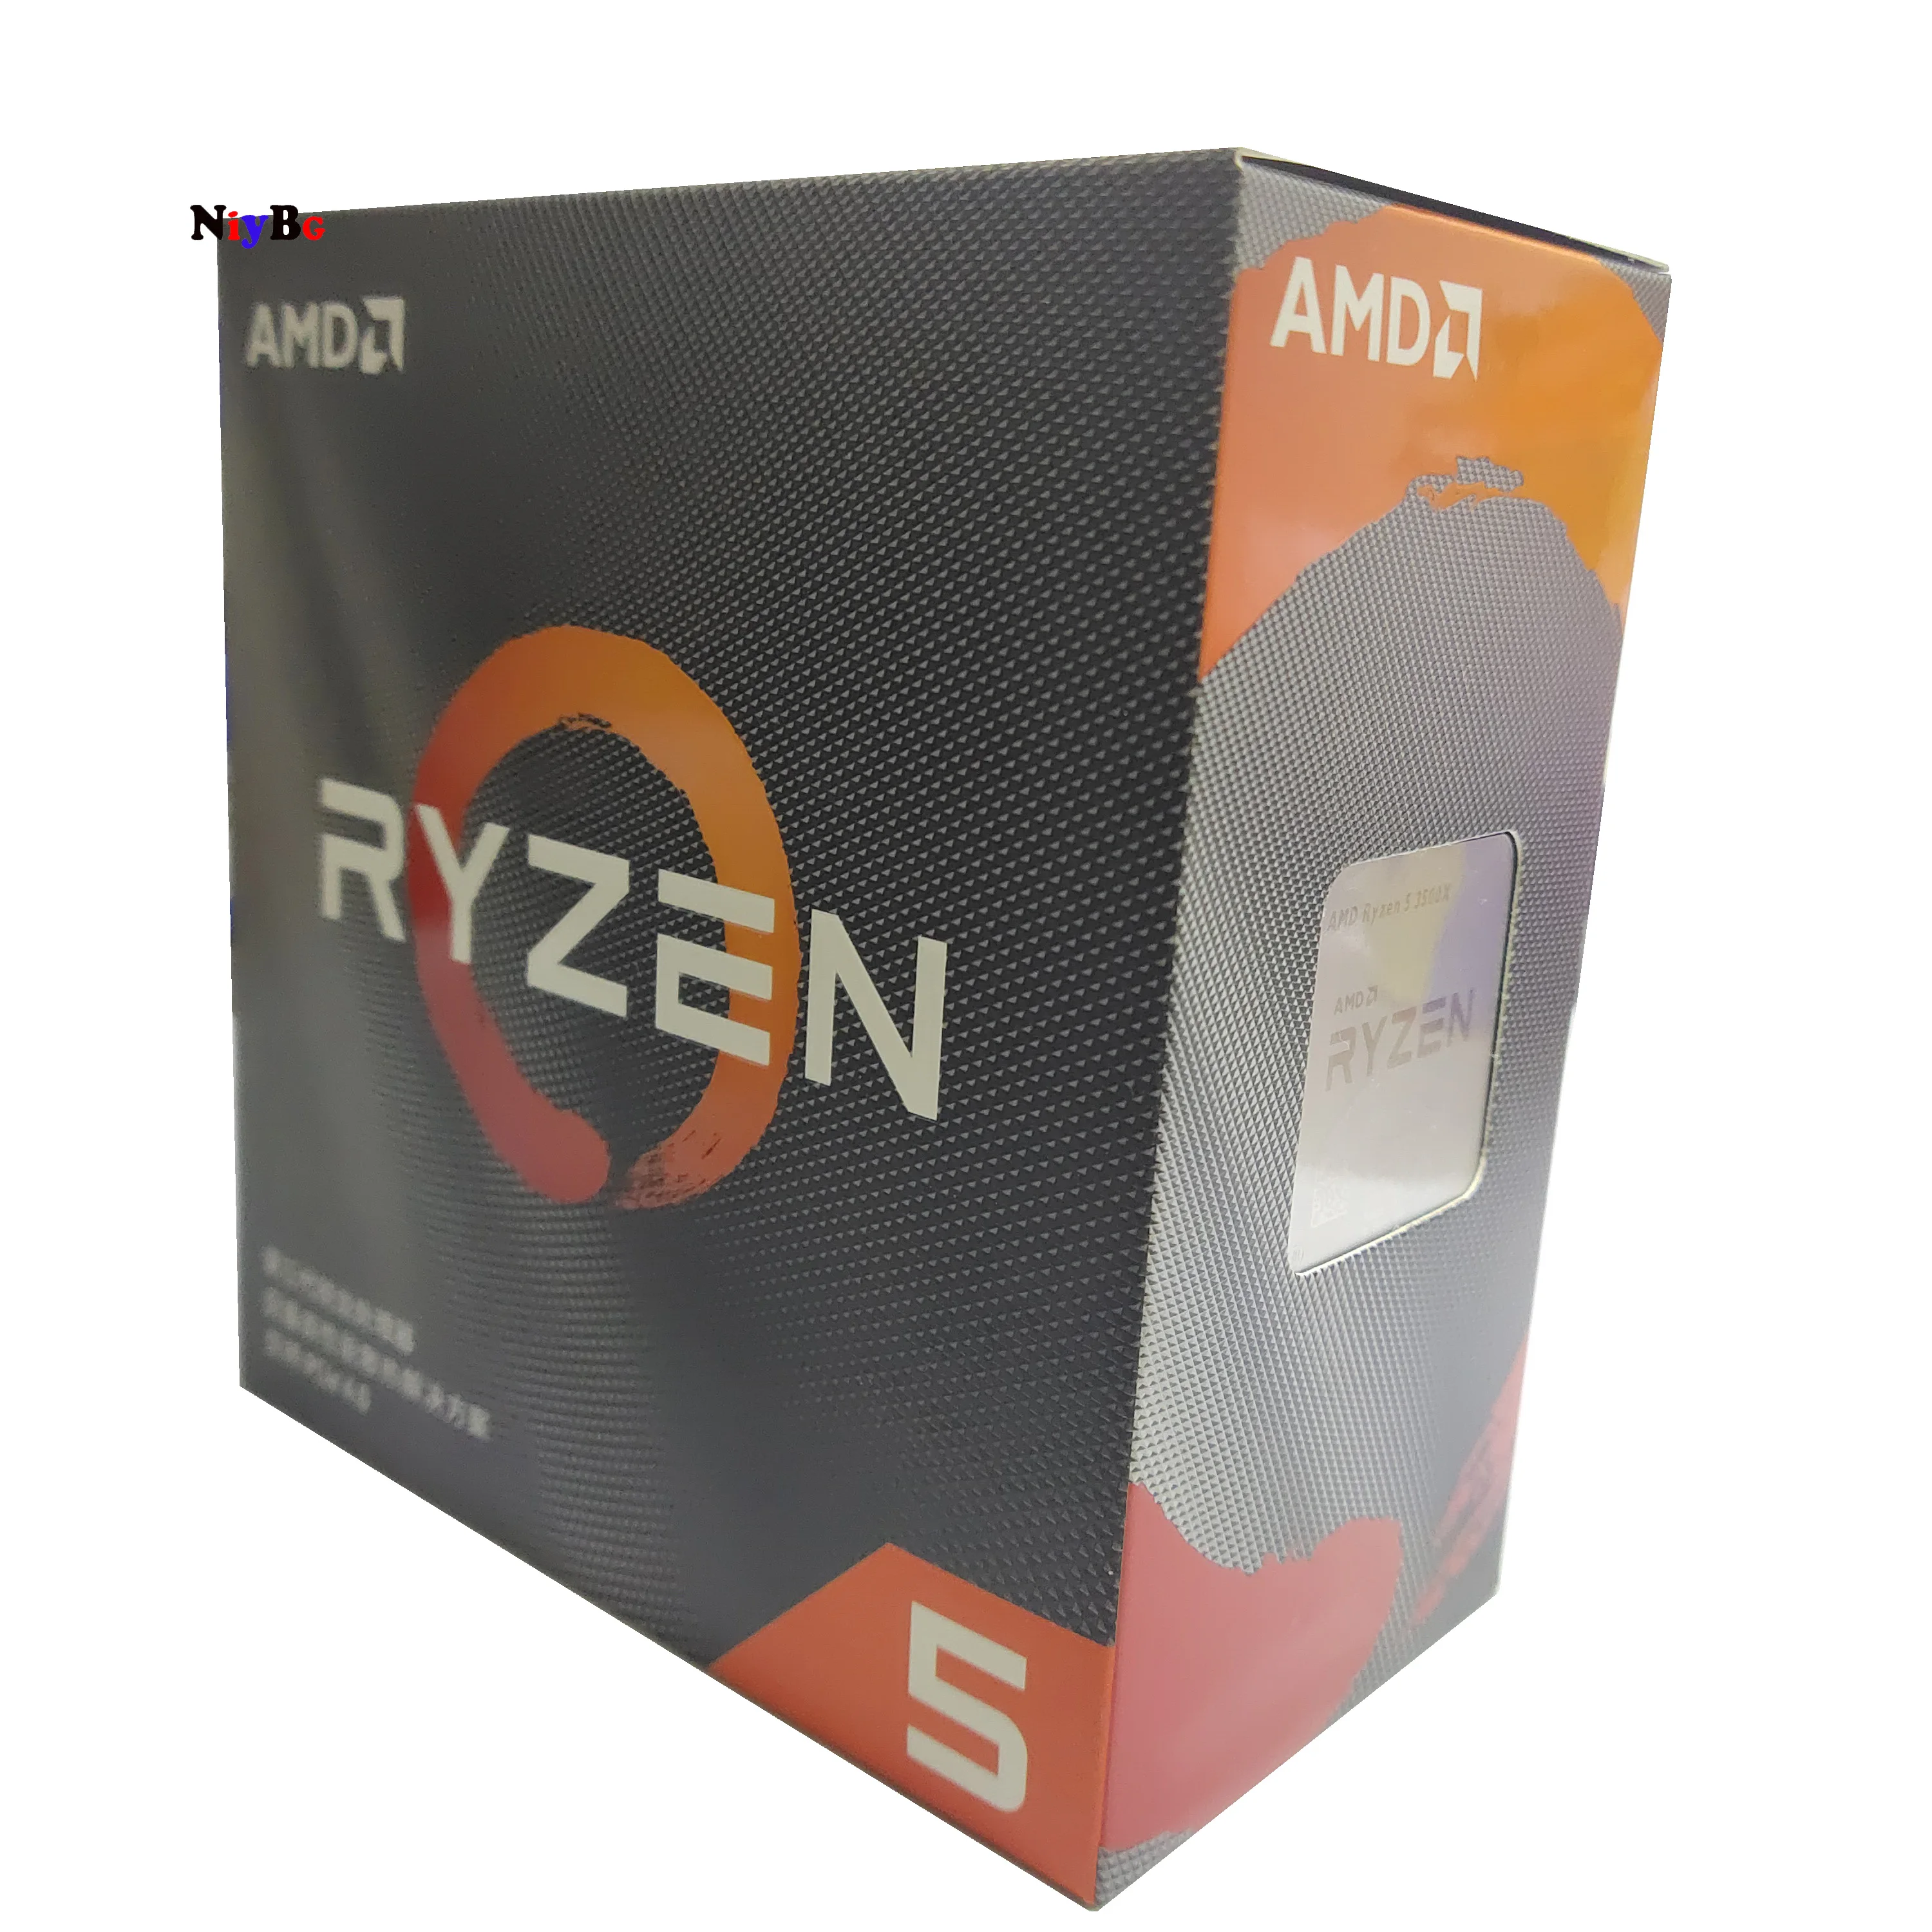 Popolnoma novo izvirno AMD Ryzen 5 3500X R5 3500X 3.6 GHz šest-core šest-nit CPU procesor z ventilatorjem 4100 MHz, socket AM4